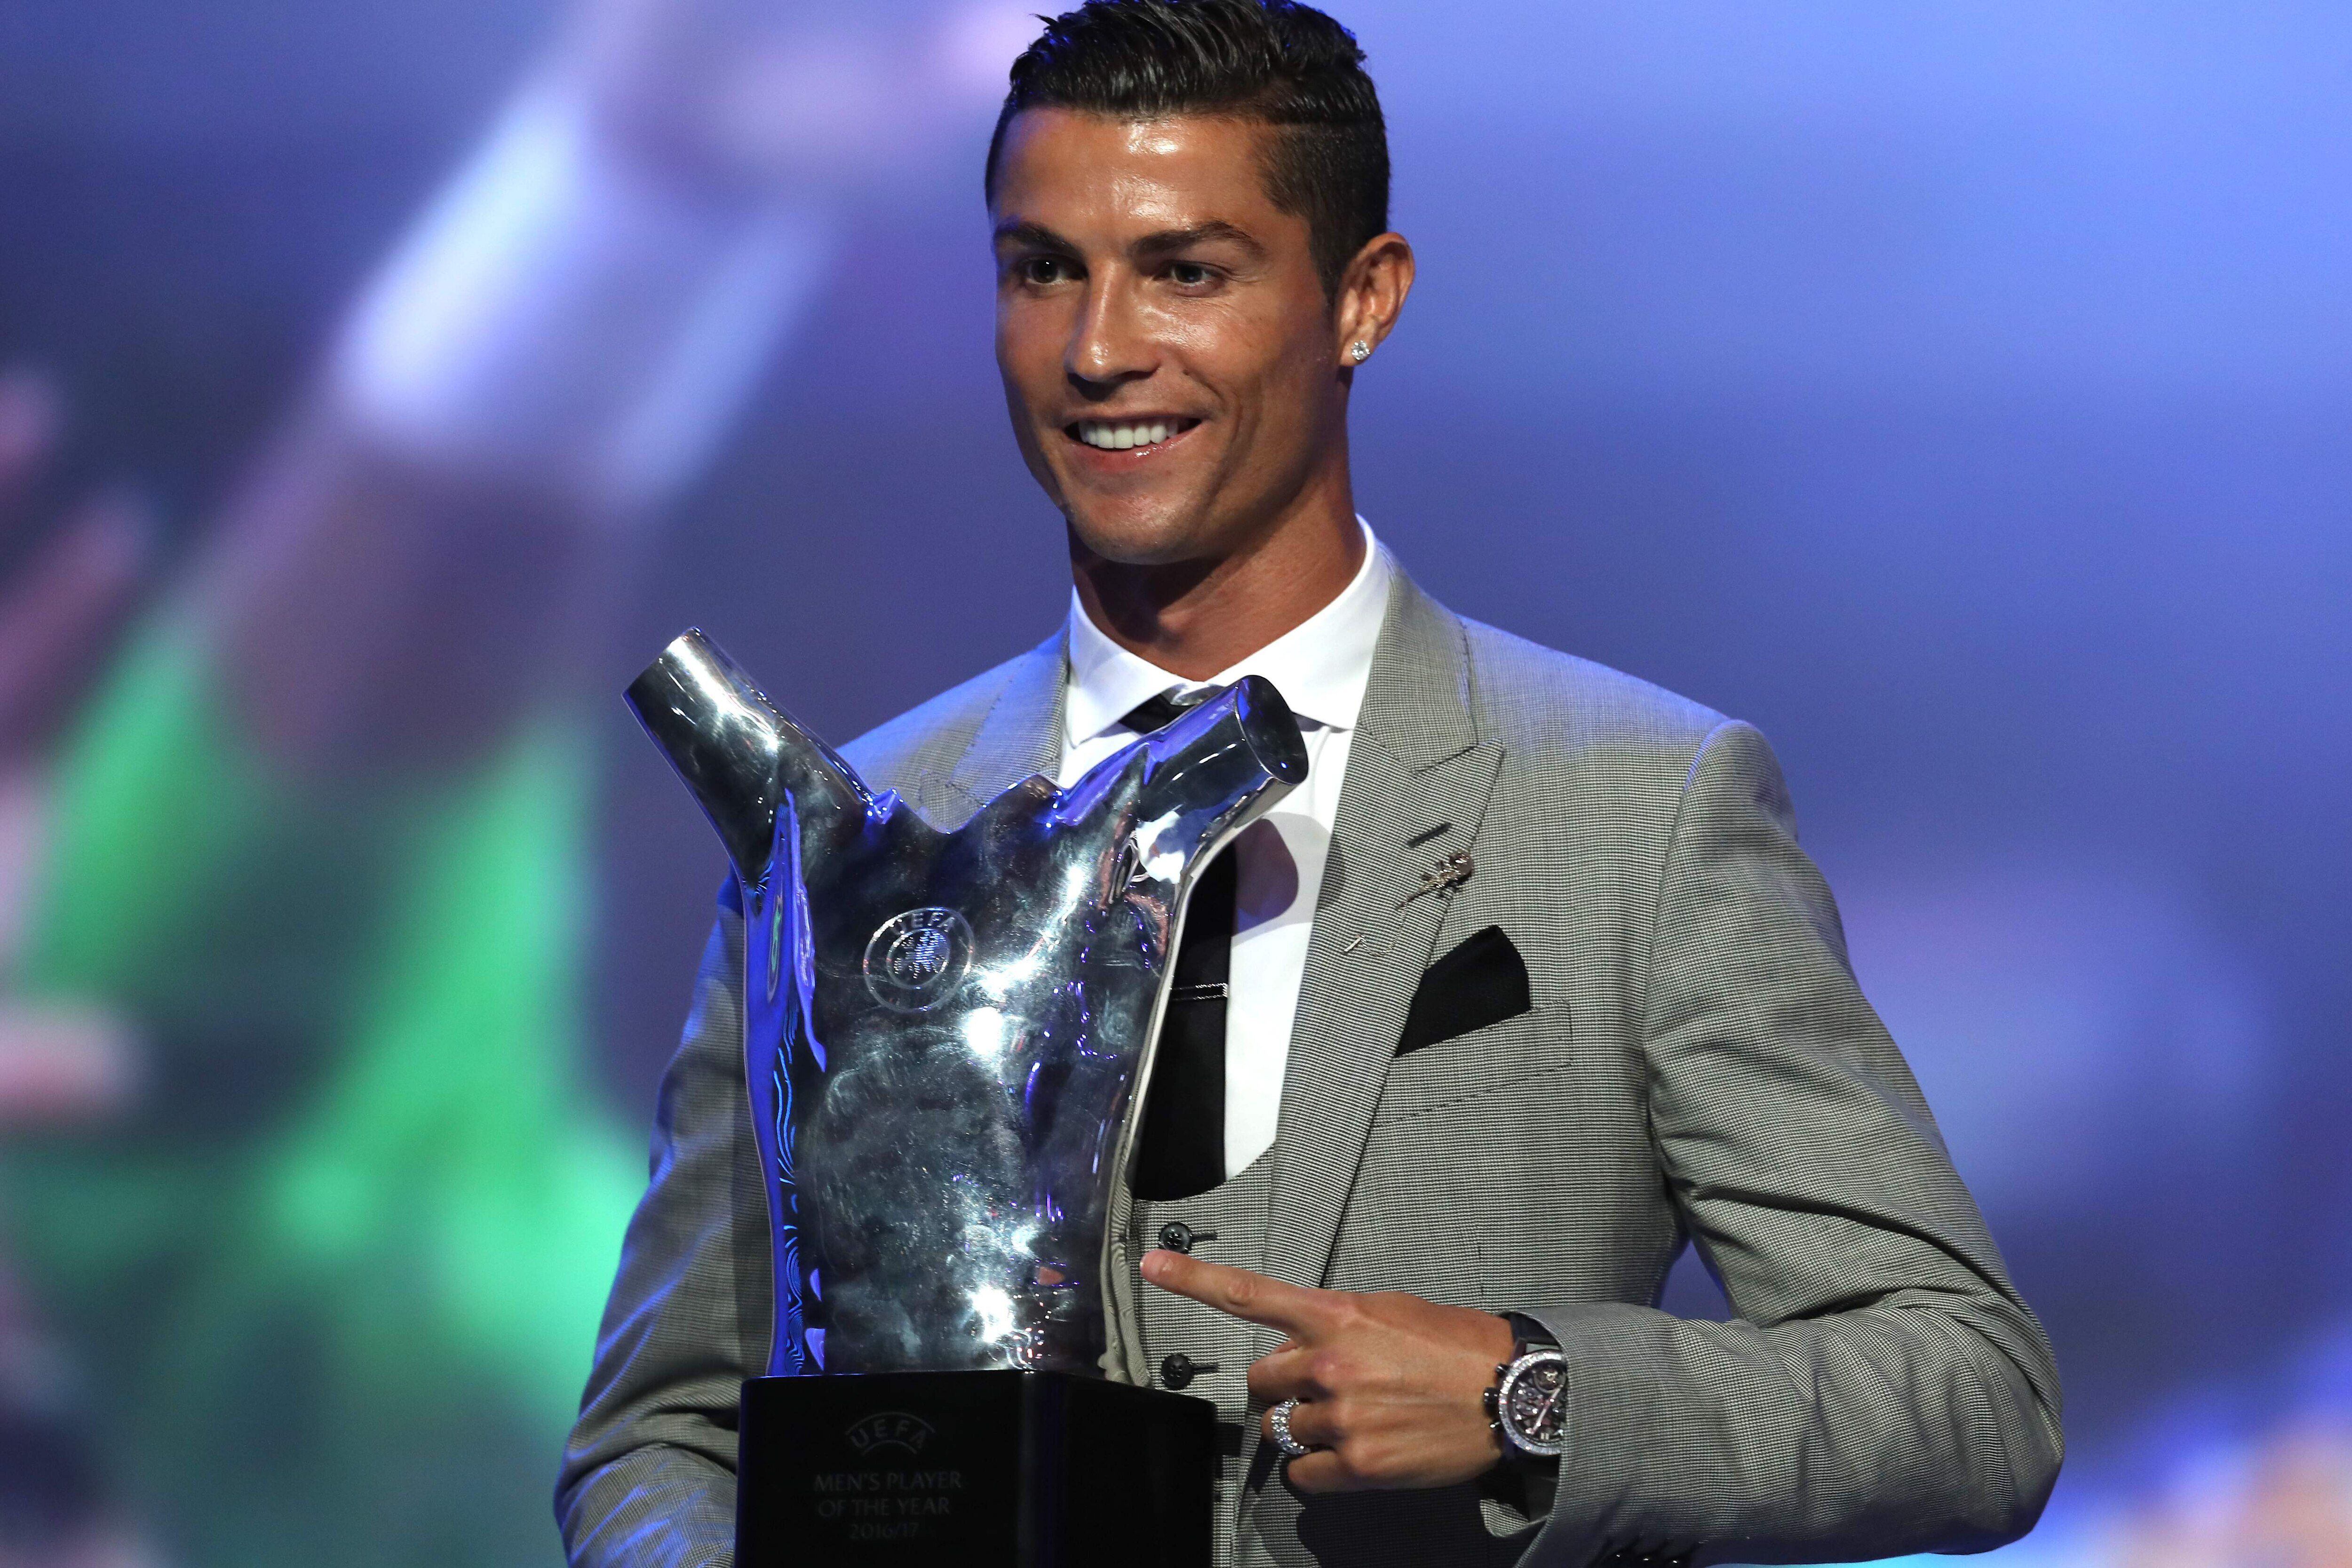 Cristiano Ronaldo melhor jogador do mundo pela quinta vez